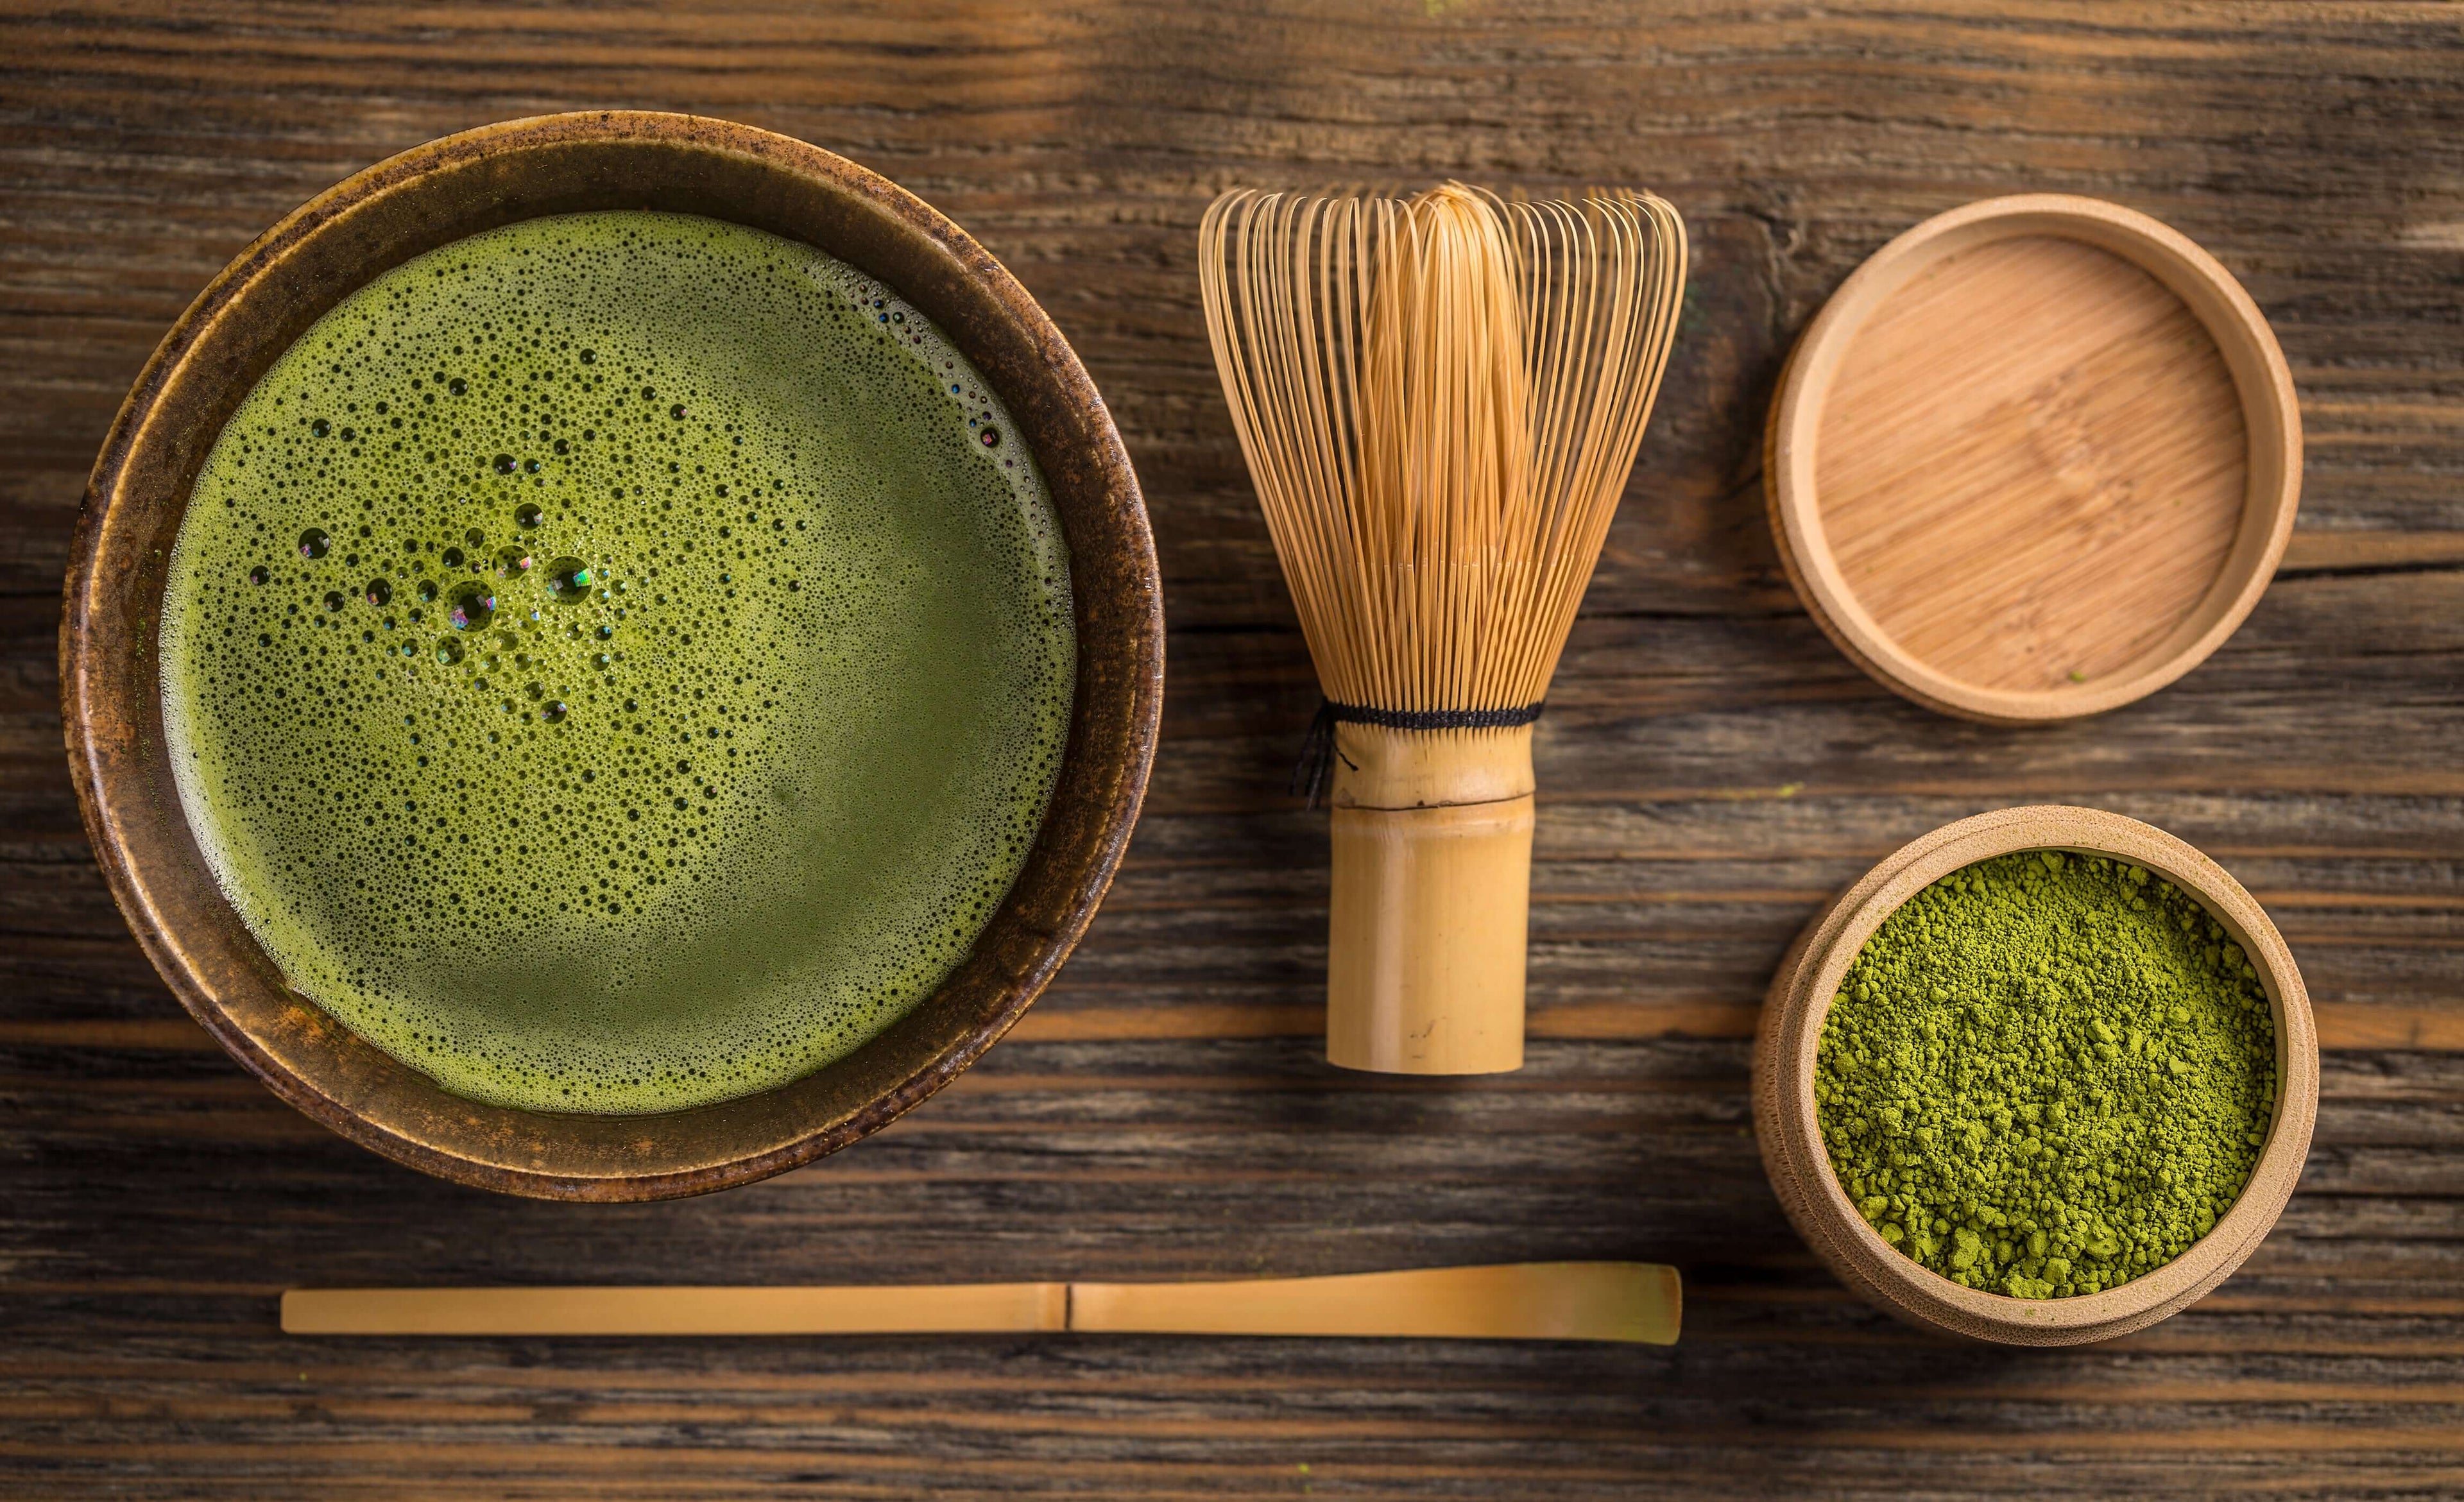 Natural Bamboo Matcha Green Tea Whisk Chasen Preparing